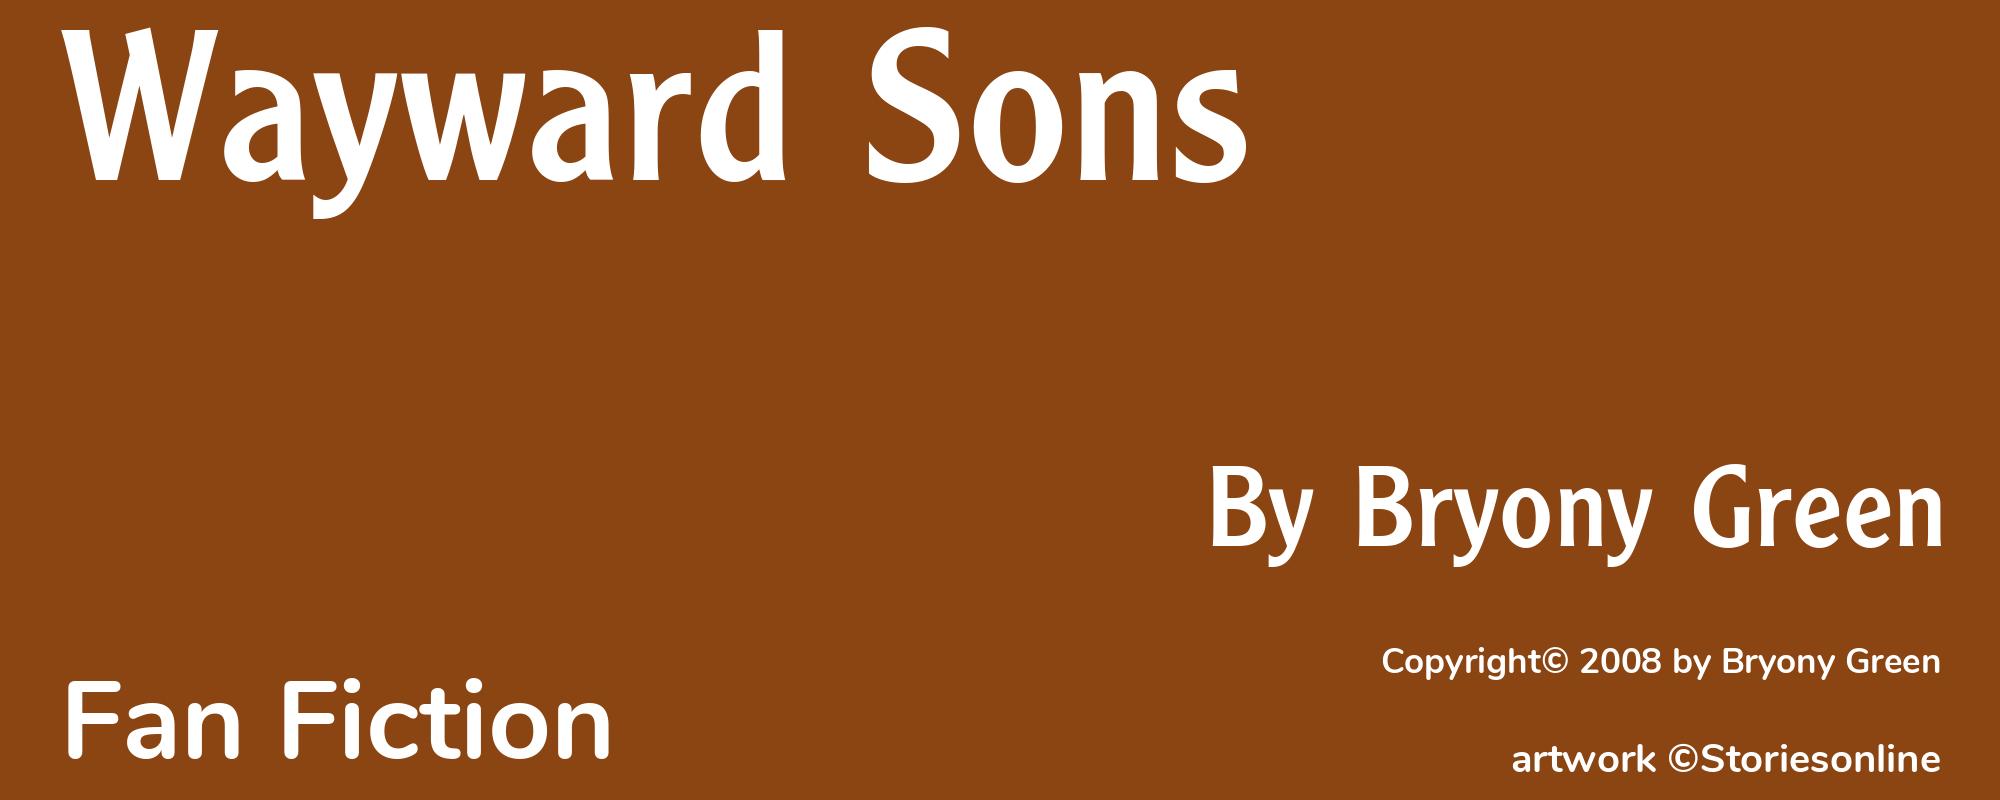 Wayward Sons - Cover